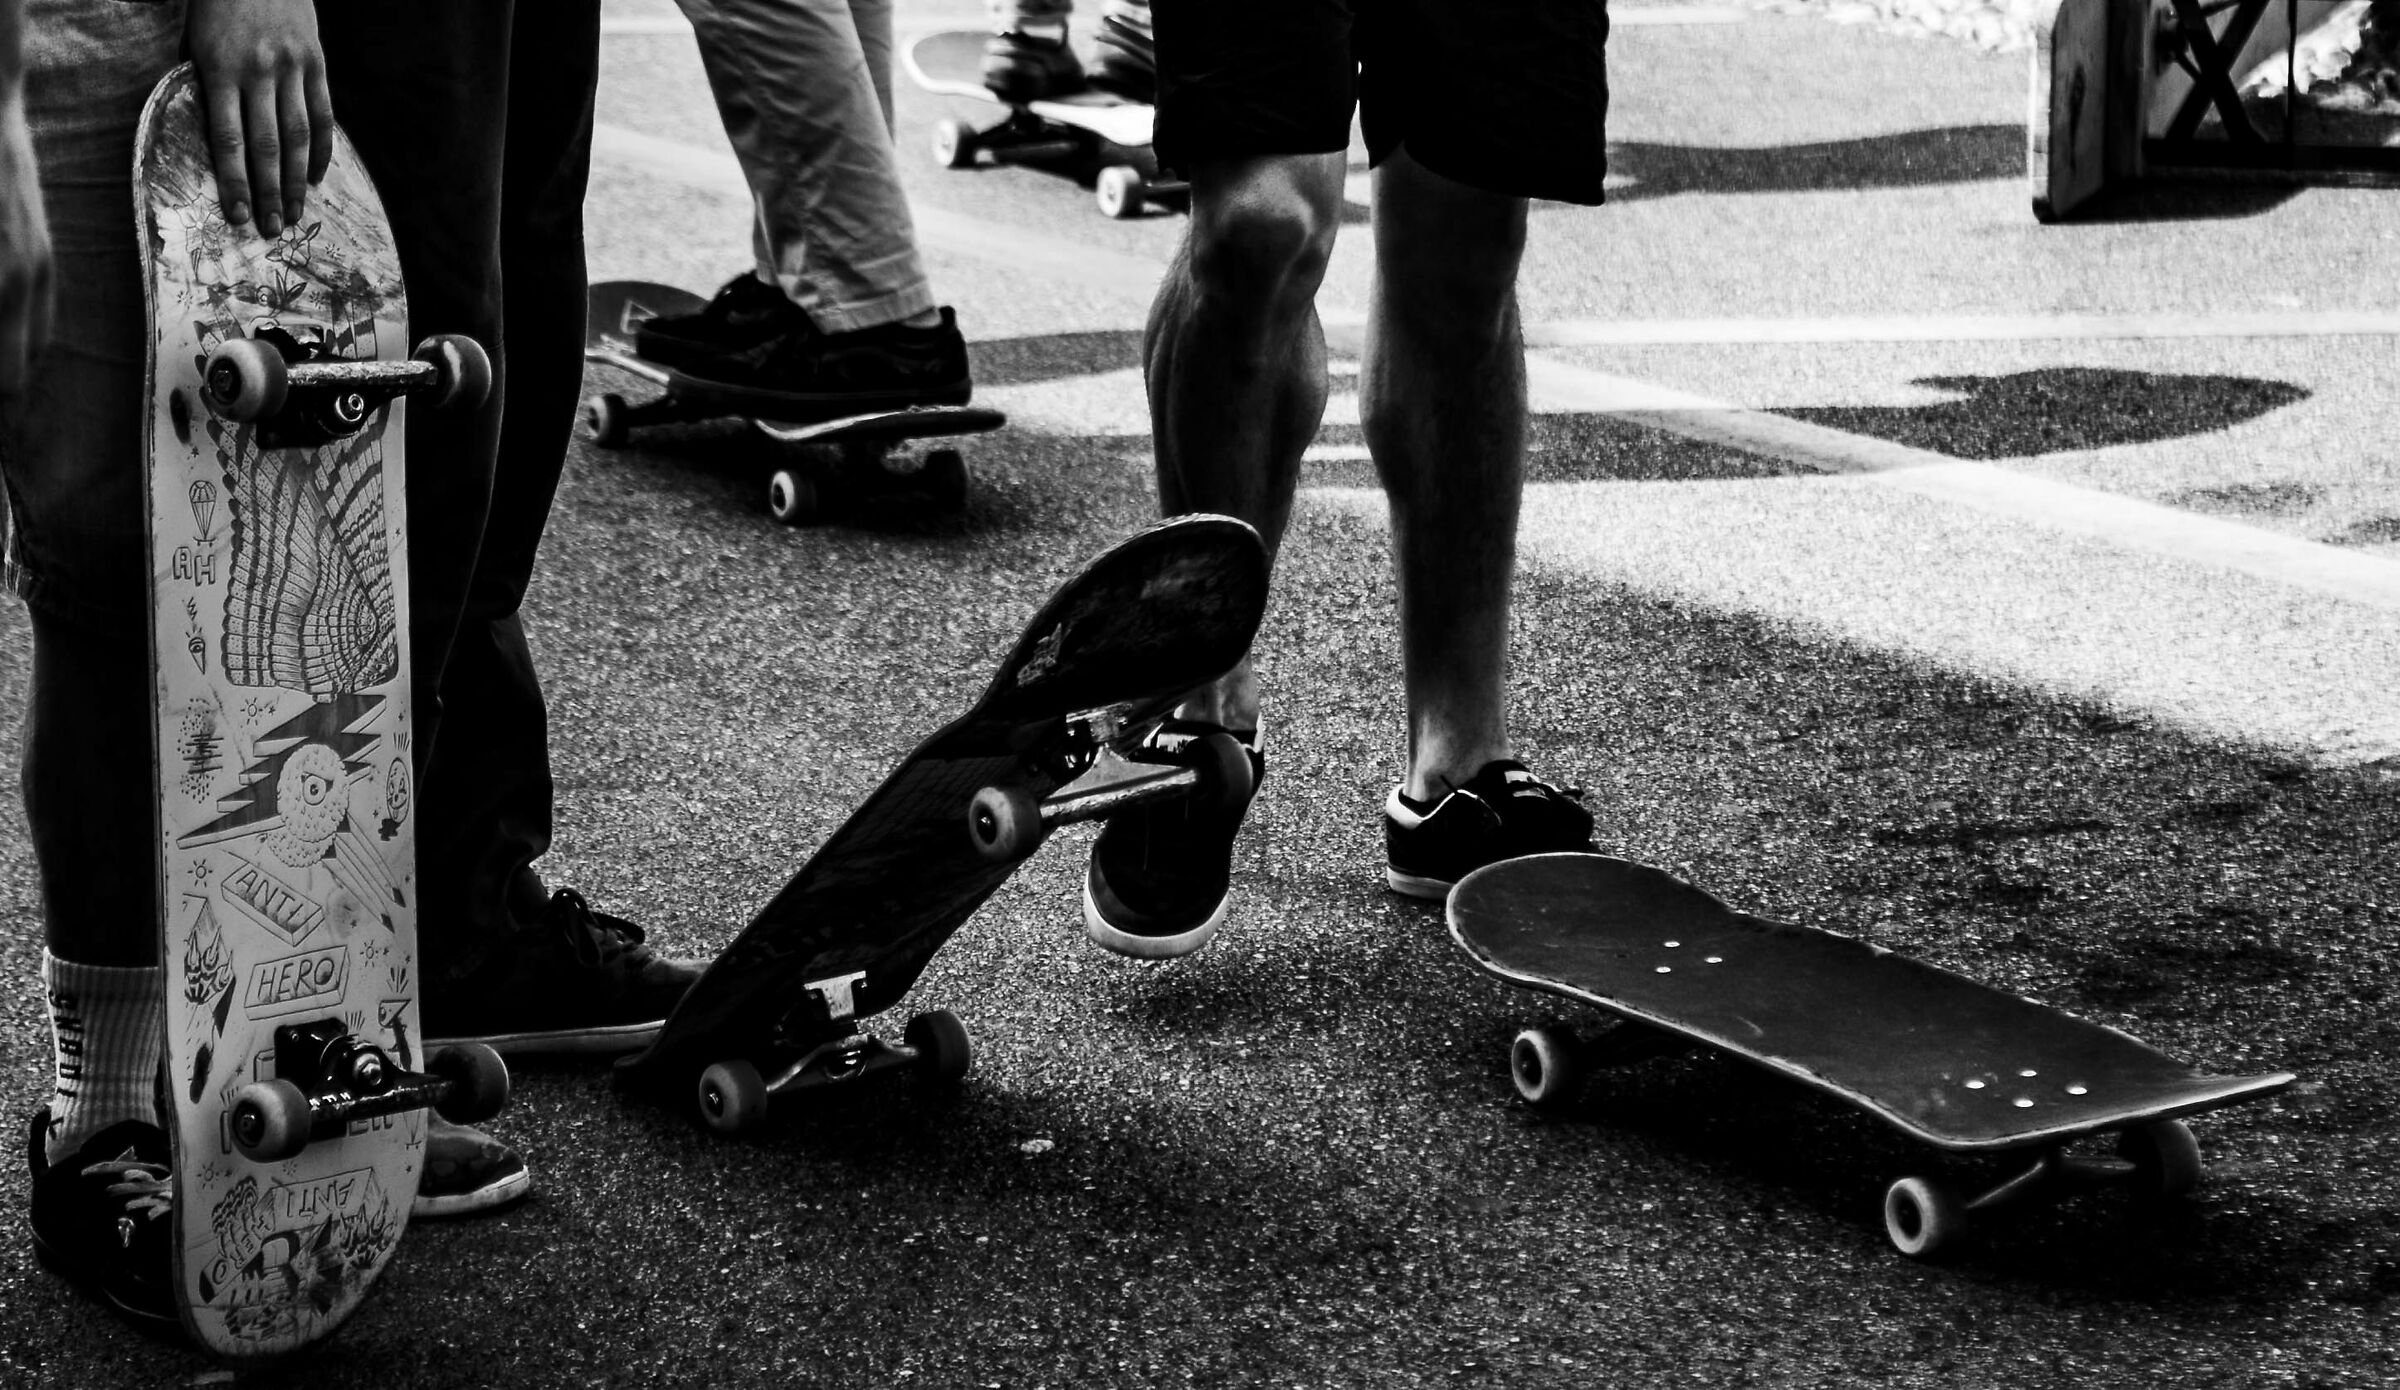 Skateboards...